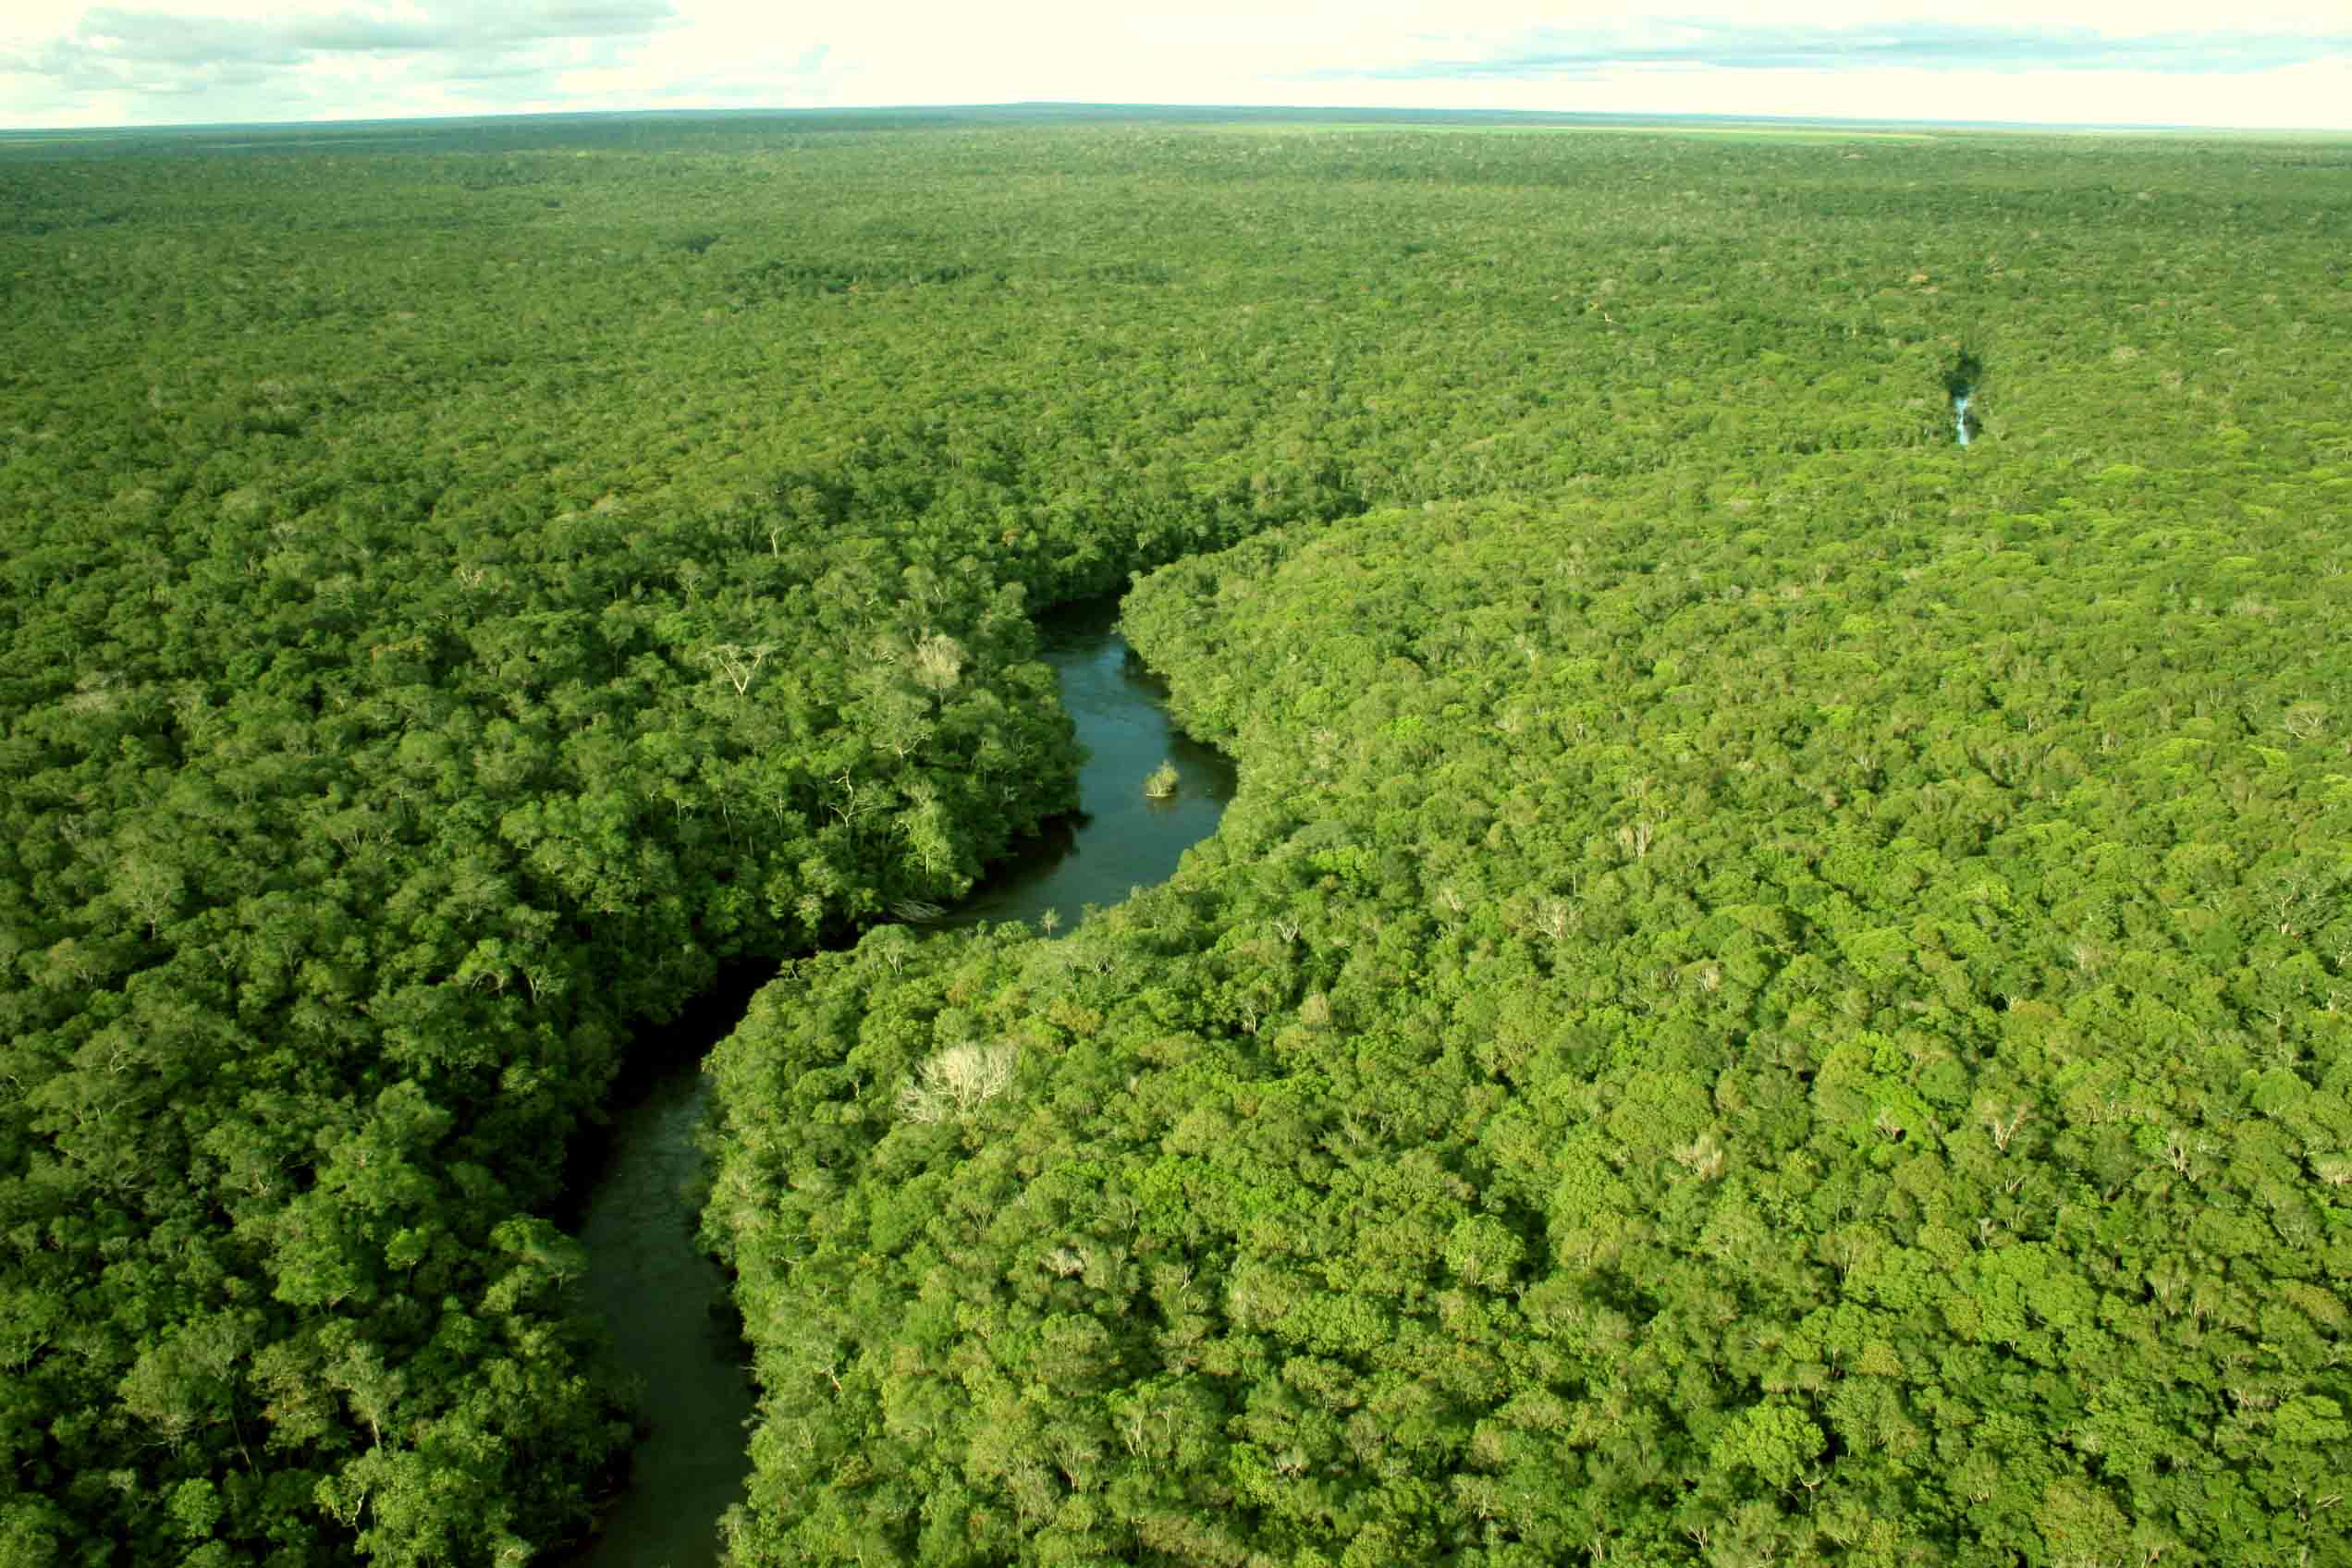 “O Sínodo da Amazônia é uma forma de escutar como atuamos aqui”